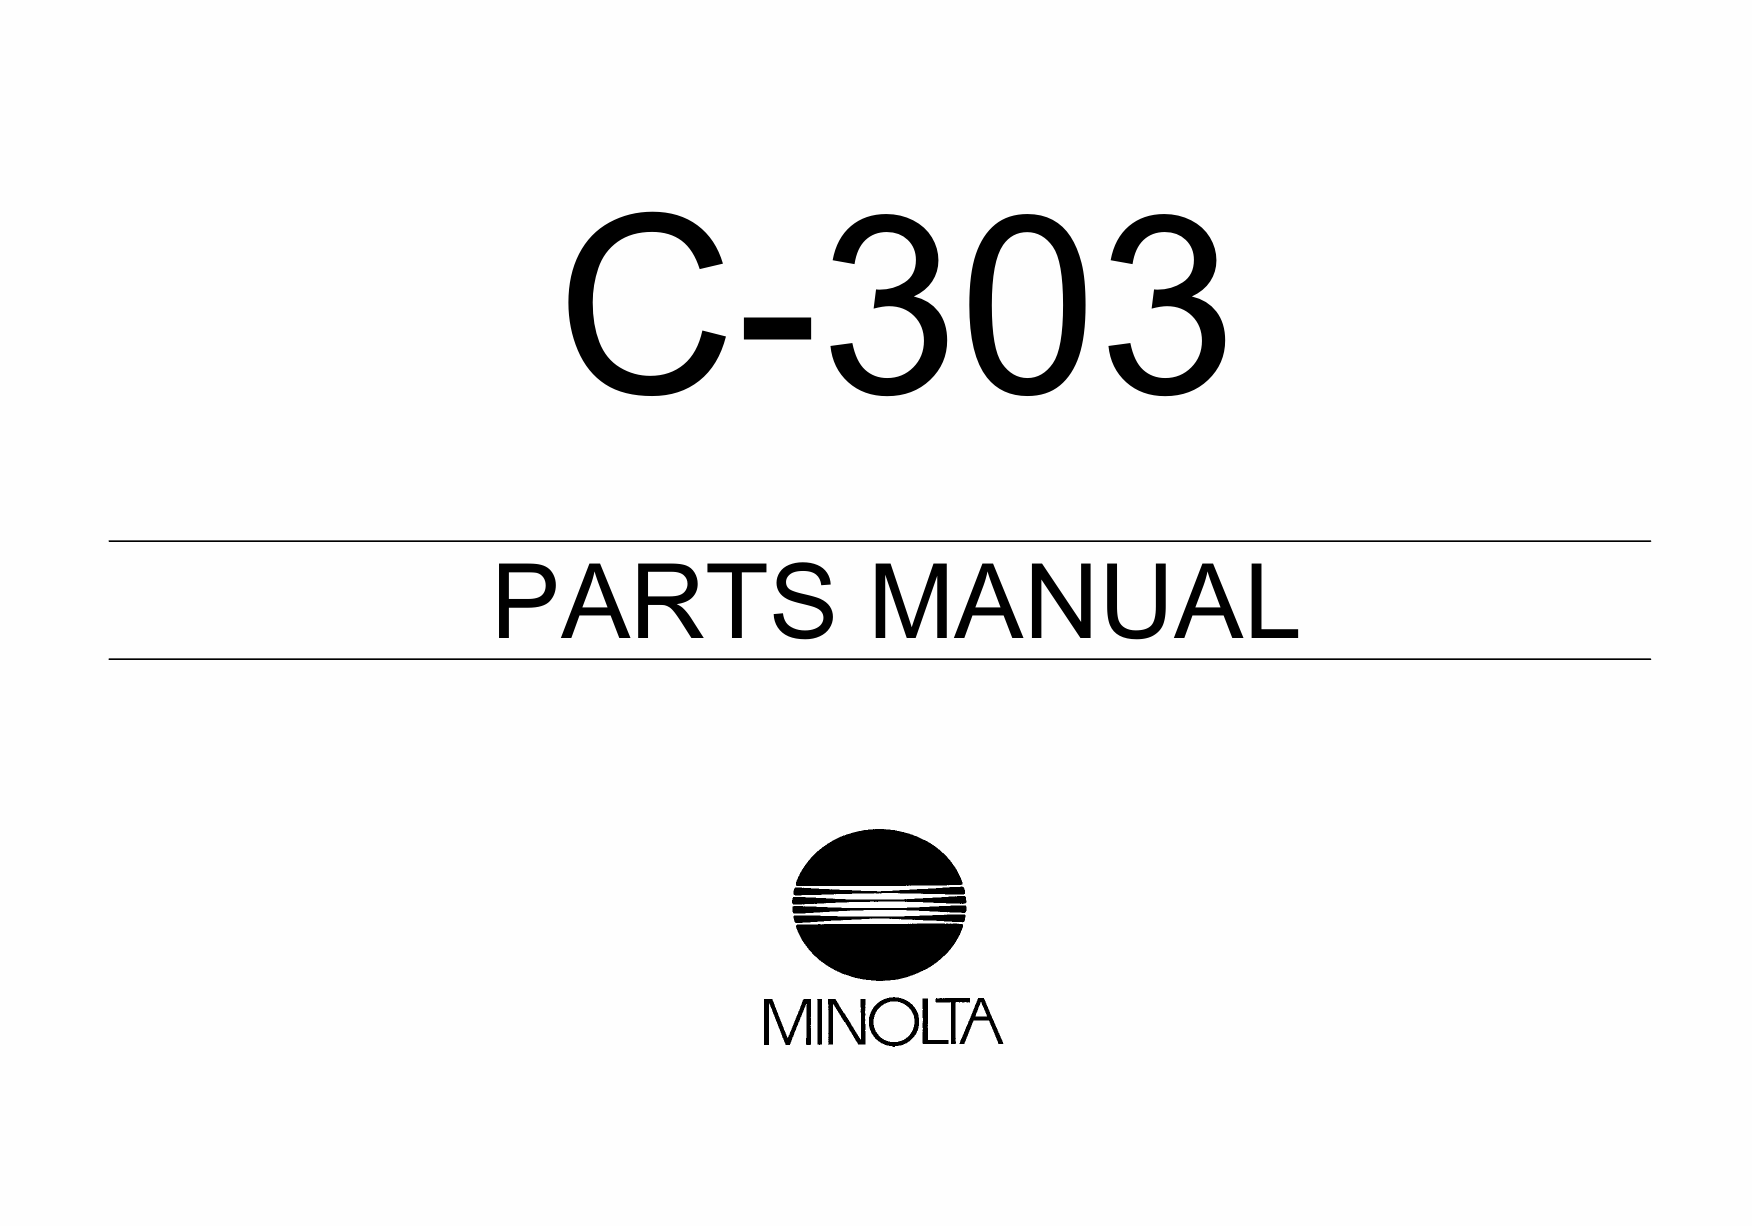 Konica-Minolta Options C-303 Parts Manual-1